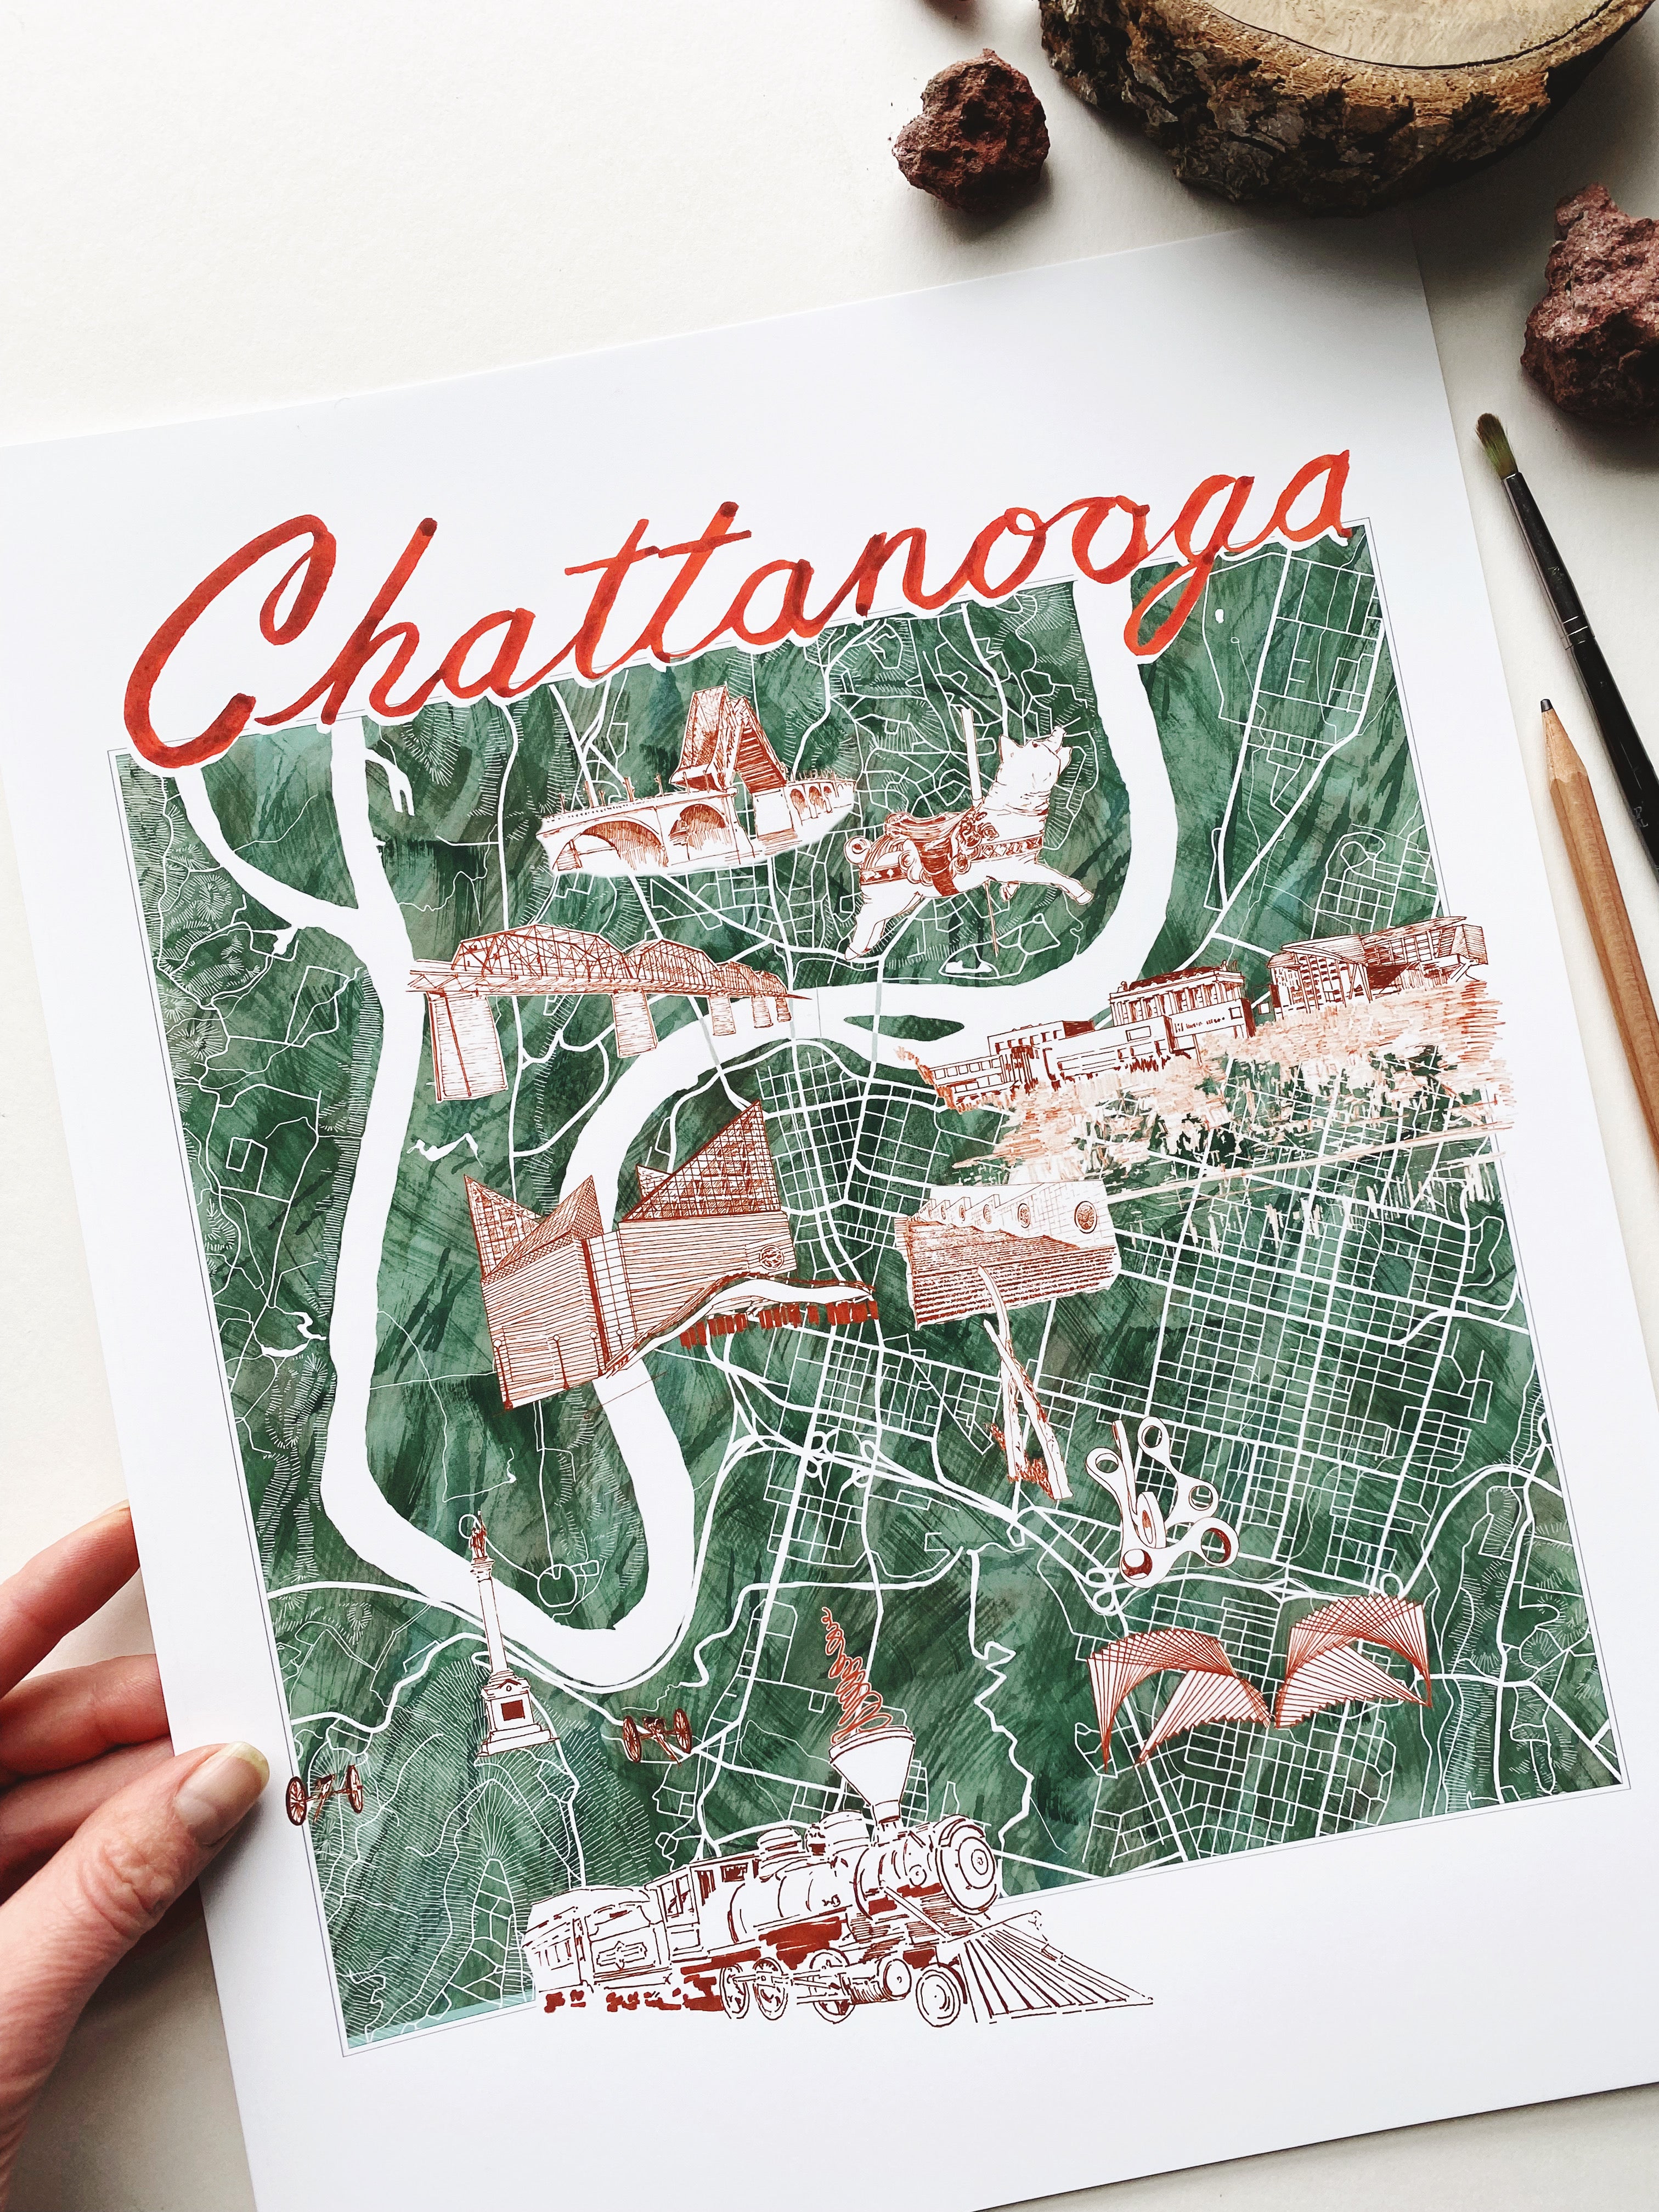 CHATTANOOGA "Charms" Map: PRINT